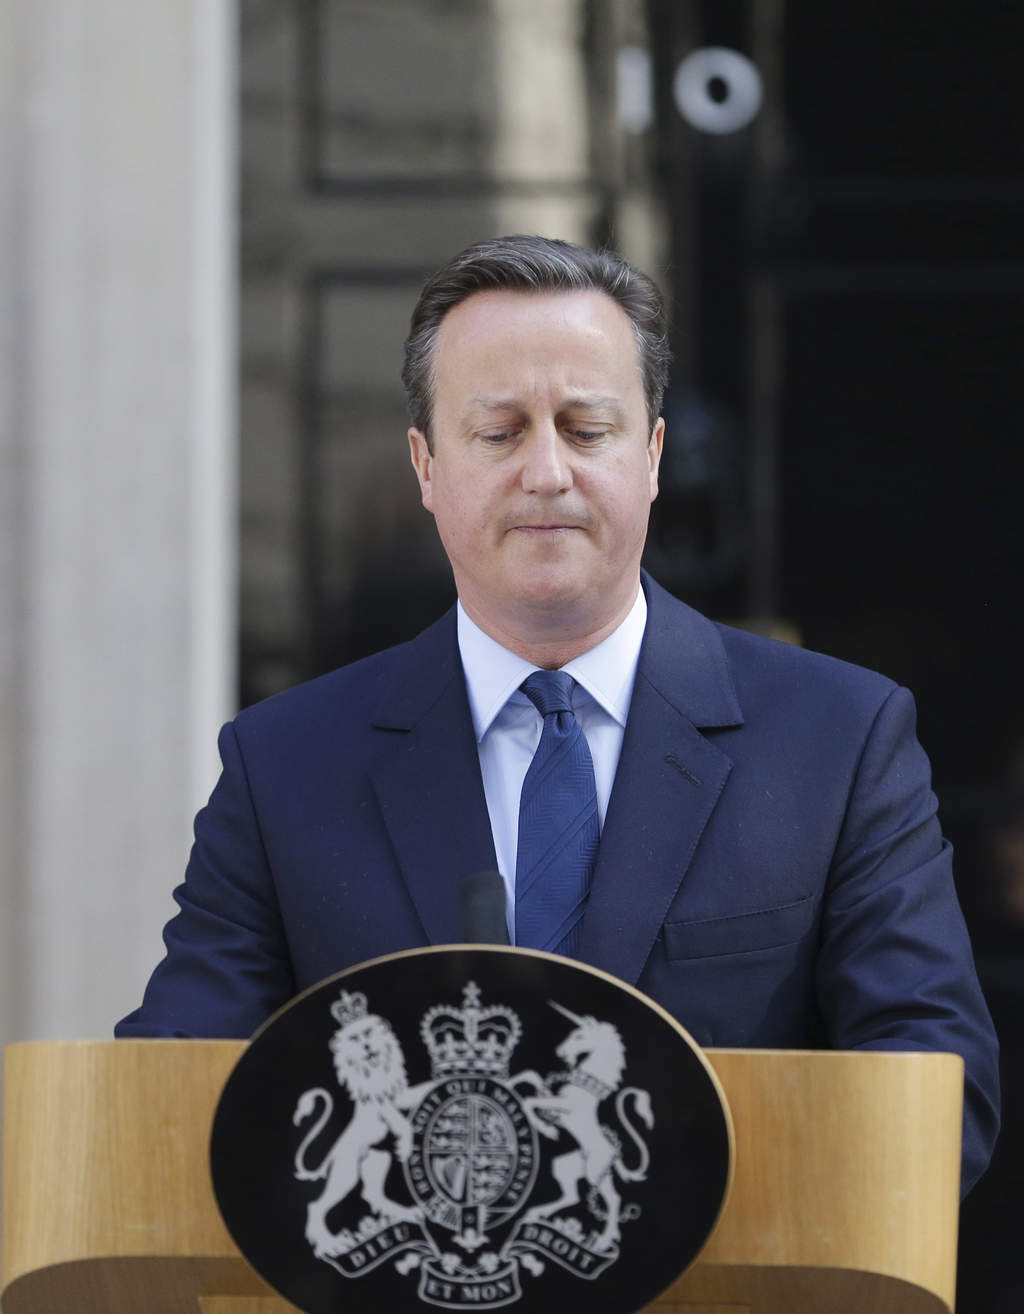 Se irá. El primer ministro David Cameron anunció ayer ante la residencia oficial de Downing Street, en Londres, que ha decidido no seguir como líder del Partido Conservador y jefe de Gobierno al no haber podido convencer a los británicos sobre los beneficios de continuar como miembros de la Unión Europea.